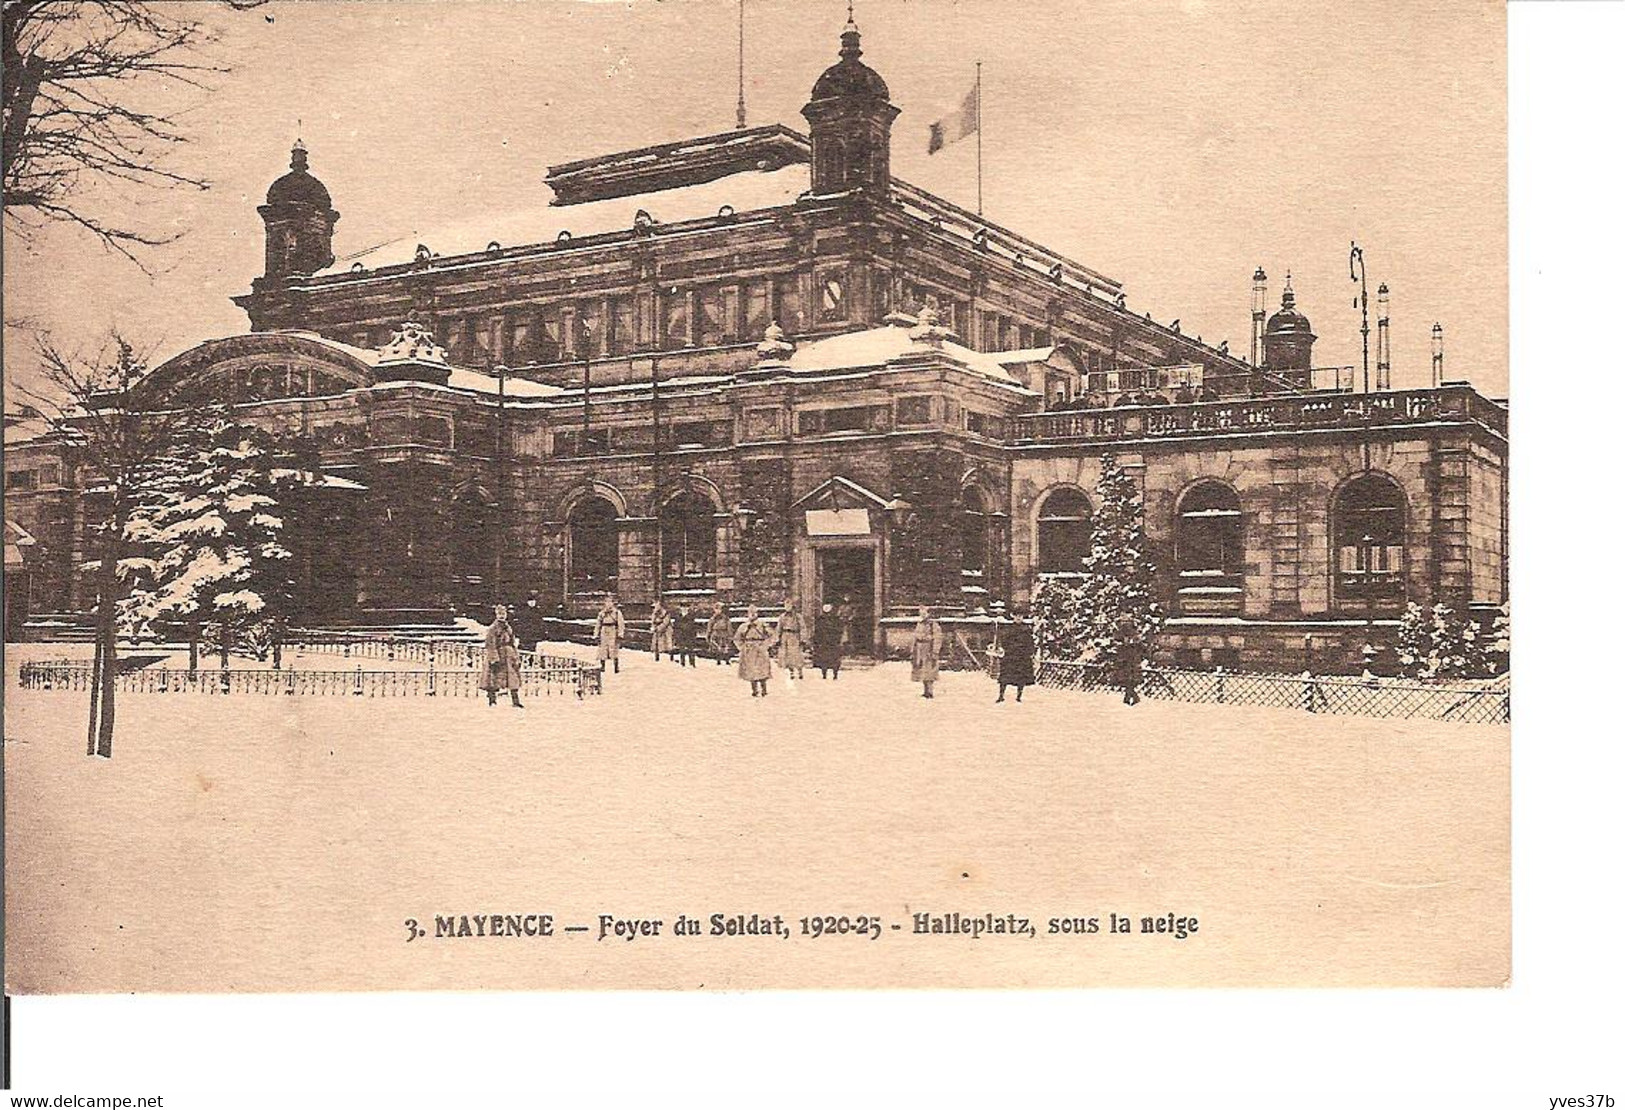 MAYENCE - Foyer Du Soldat, 1920-25 - Halleplatz, Sous La Neige - Mainz